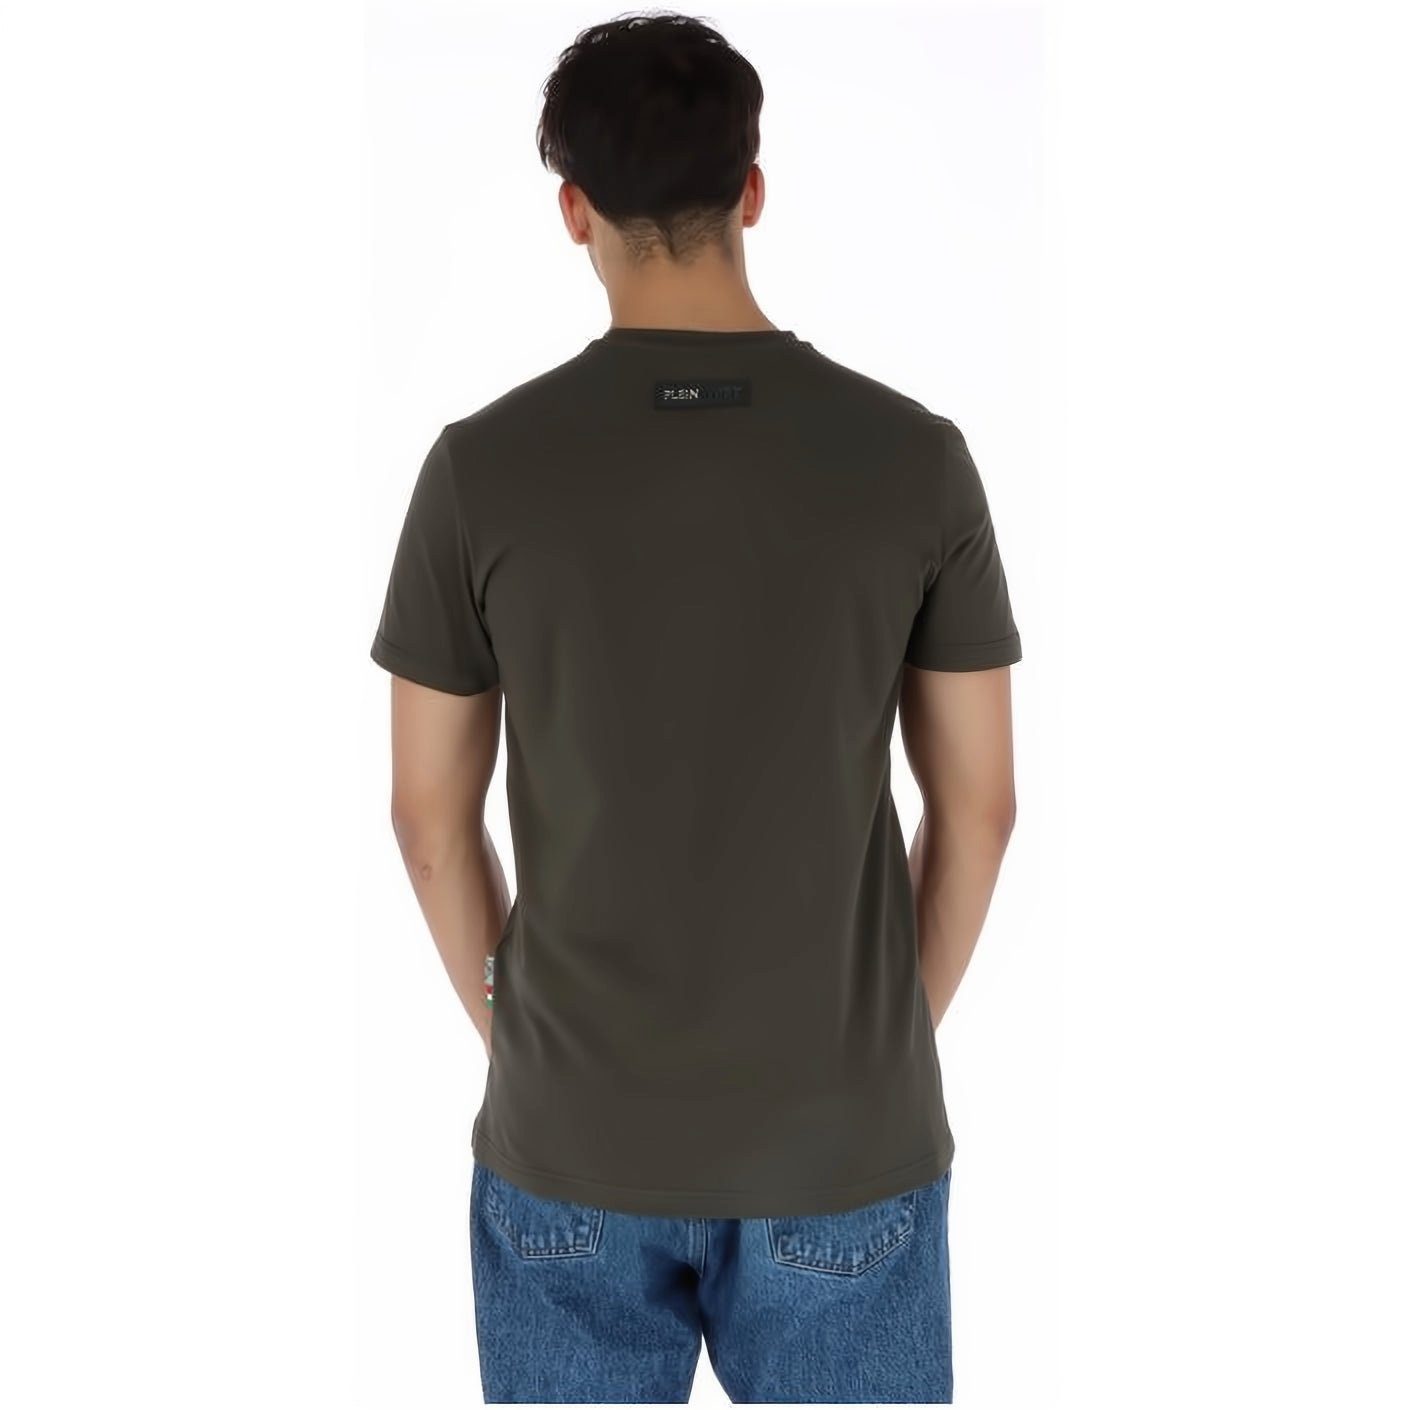 PLEIN SPORT Stylischer T-Shirt hoher ROUND Farbauswahl Look, Tragekomfort, vielfältige NECK